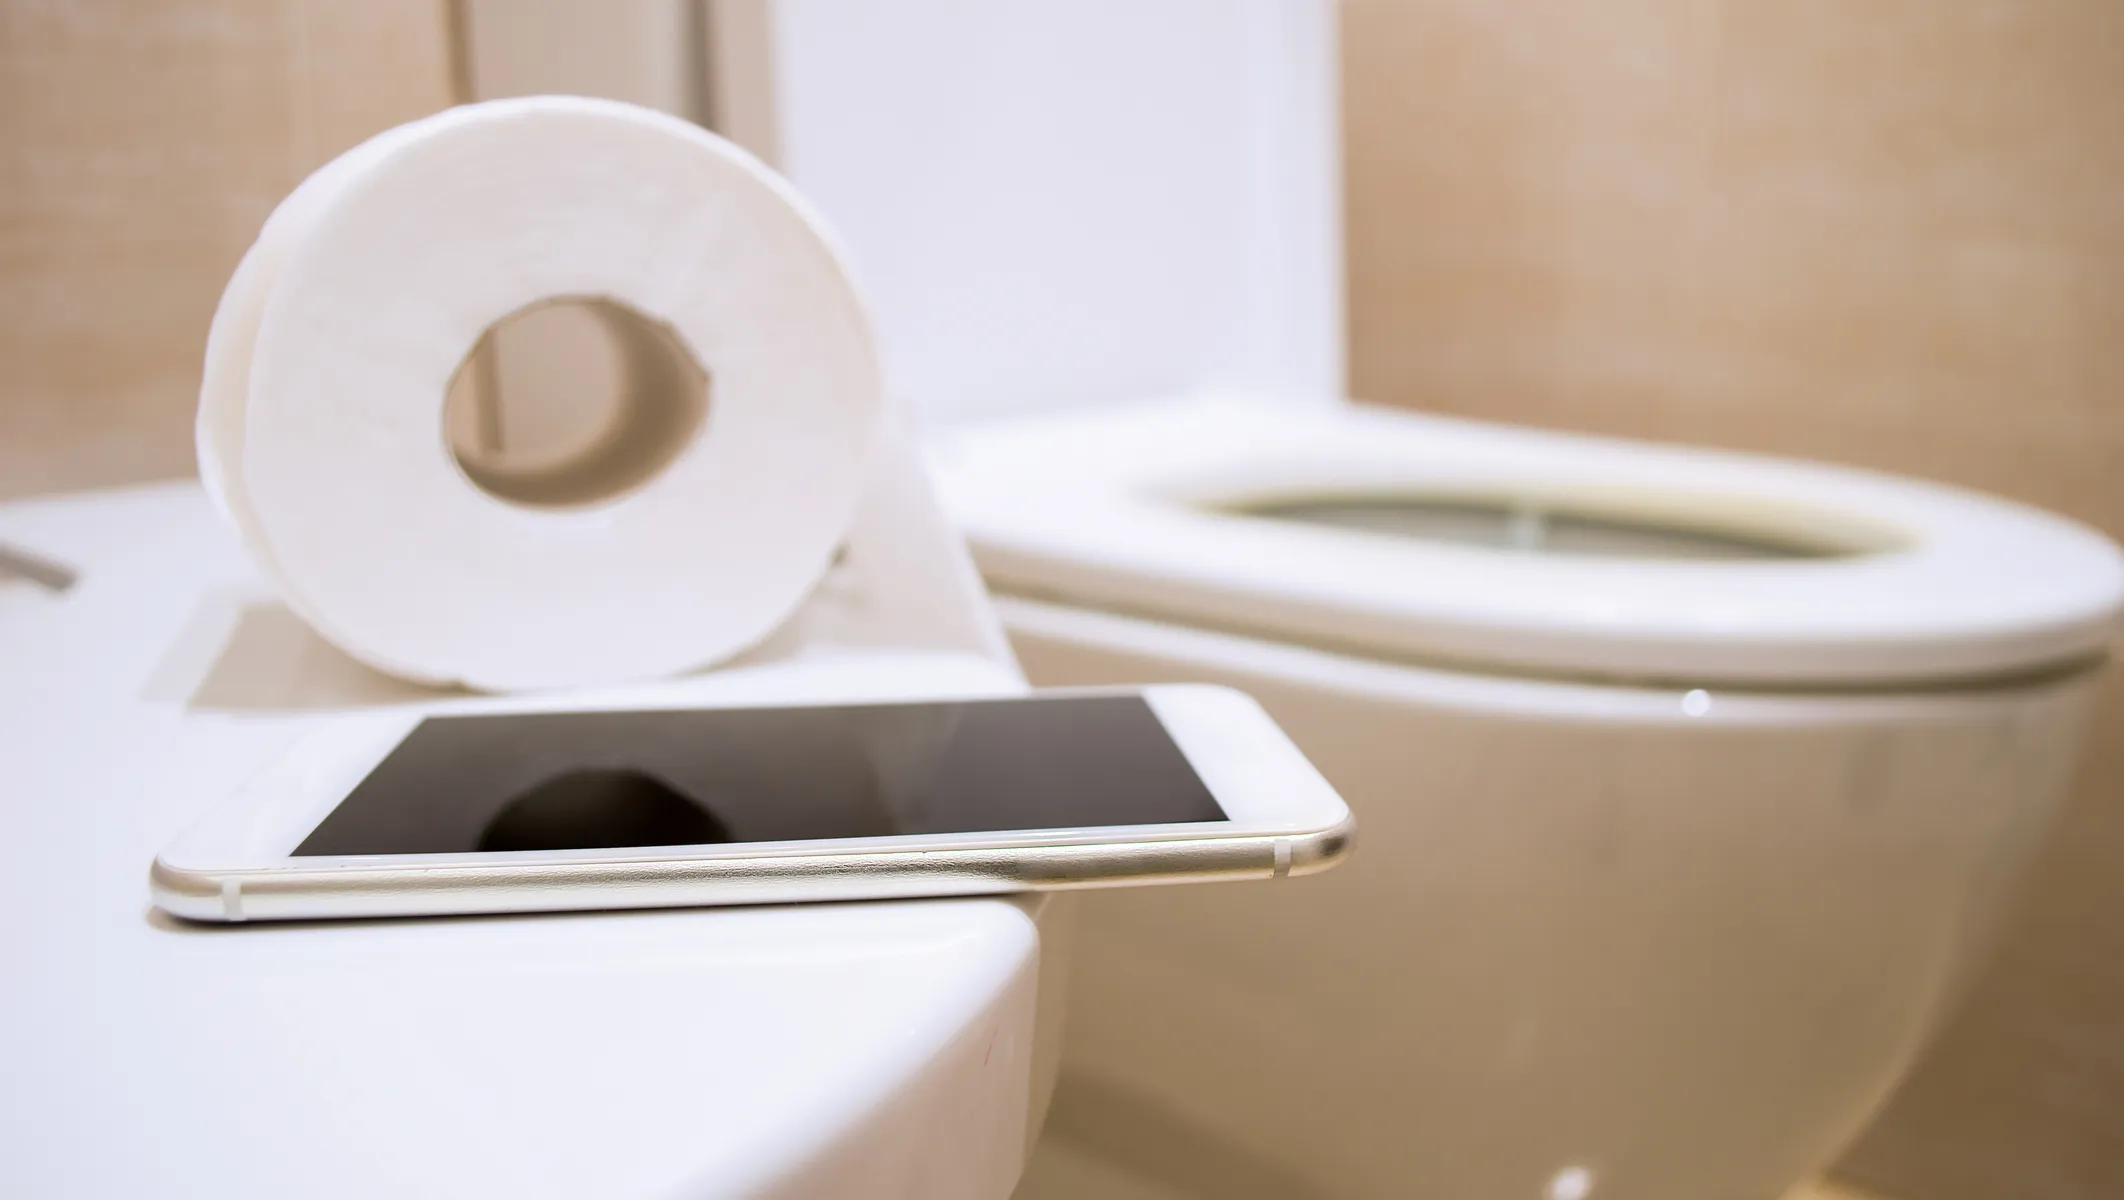 Xem điện thoại khi đi vệ sinh: Rước loạt bệnh nguy hiểm - 1